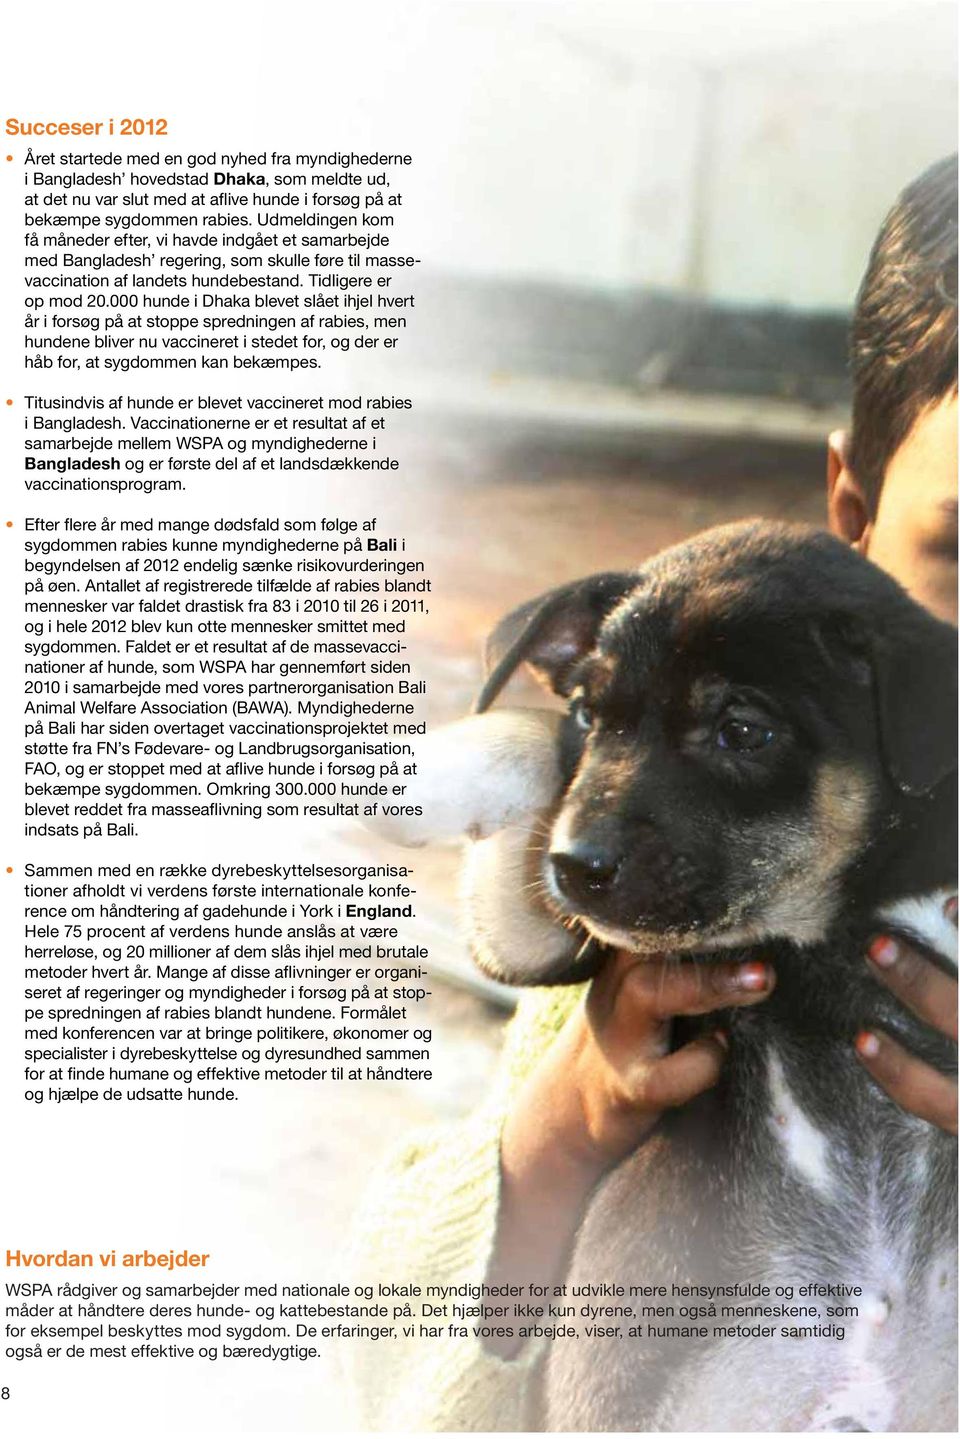 000 hunde i Dhaka blevet slået ihjel hvert år i forsøg på at stoppe spredningen af rabies, men hundene bliver nu vaccineret i stedet for, og der er håb for, at sygdommen kan bekæmpes.